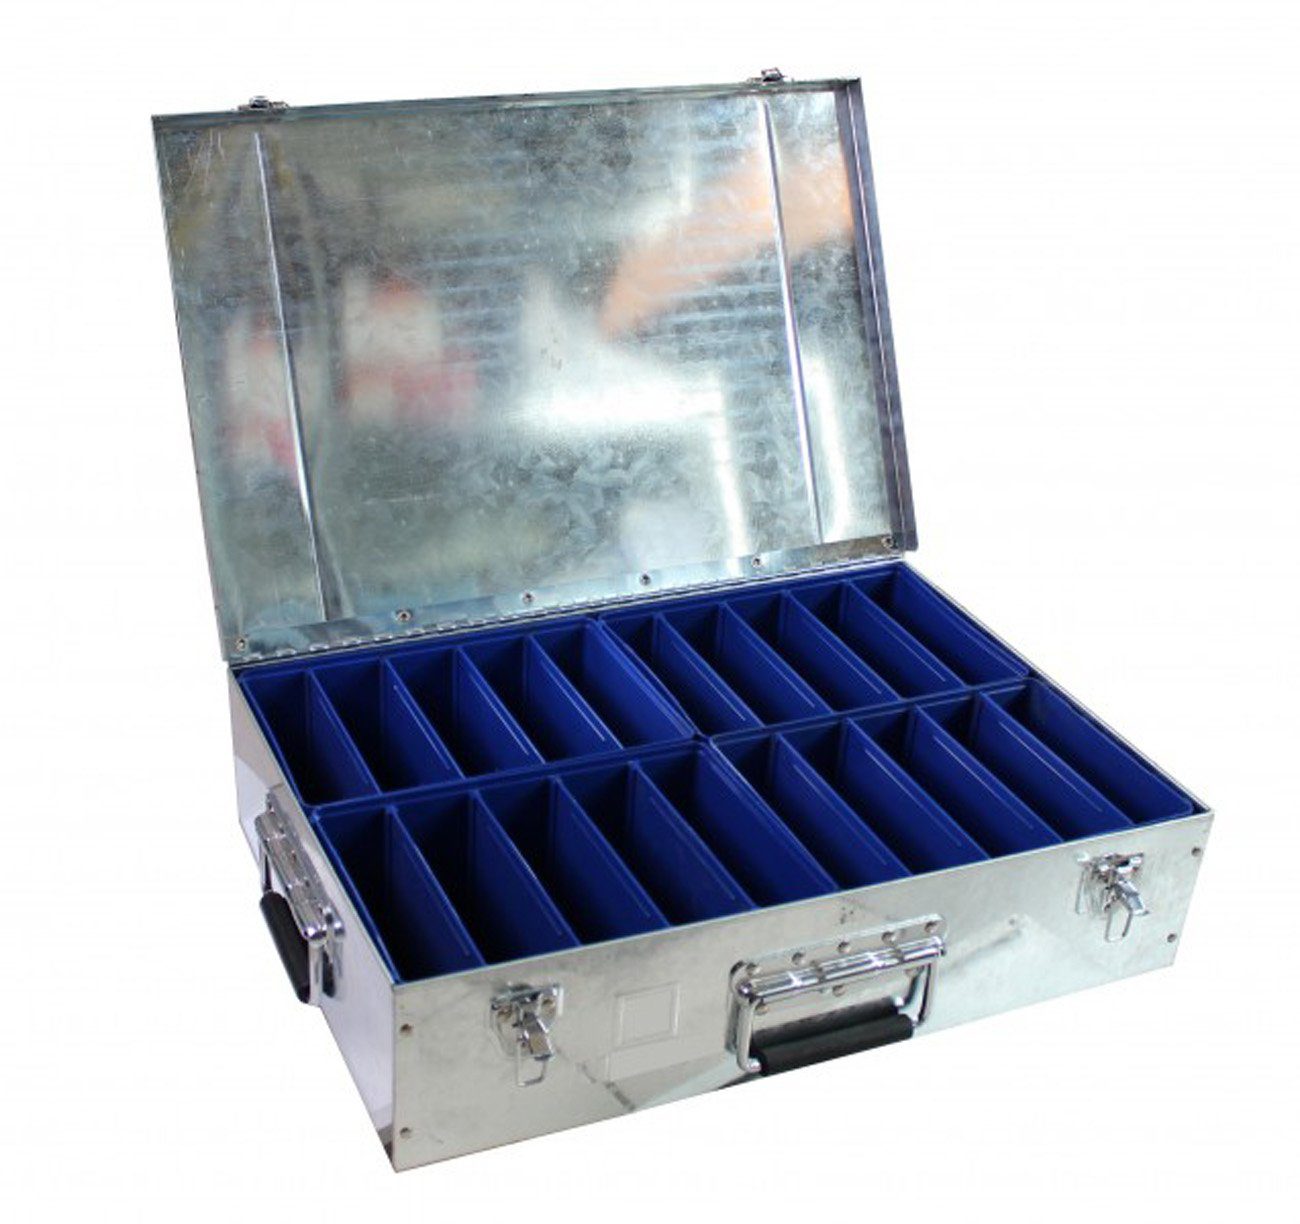 myMAW Werkzeugkoffer Koffer Fittingskoffer Metallkoffer… Fittinge Stahlblechkoffer für